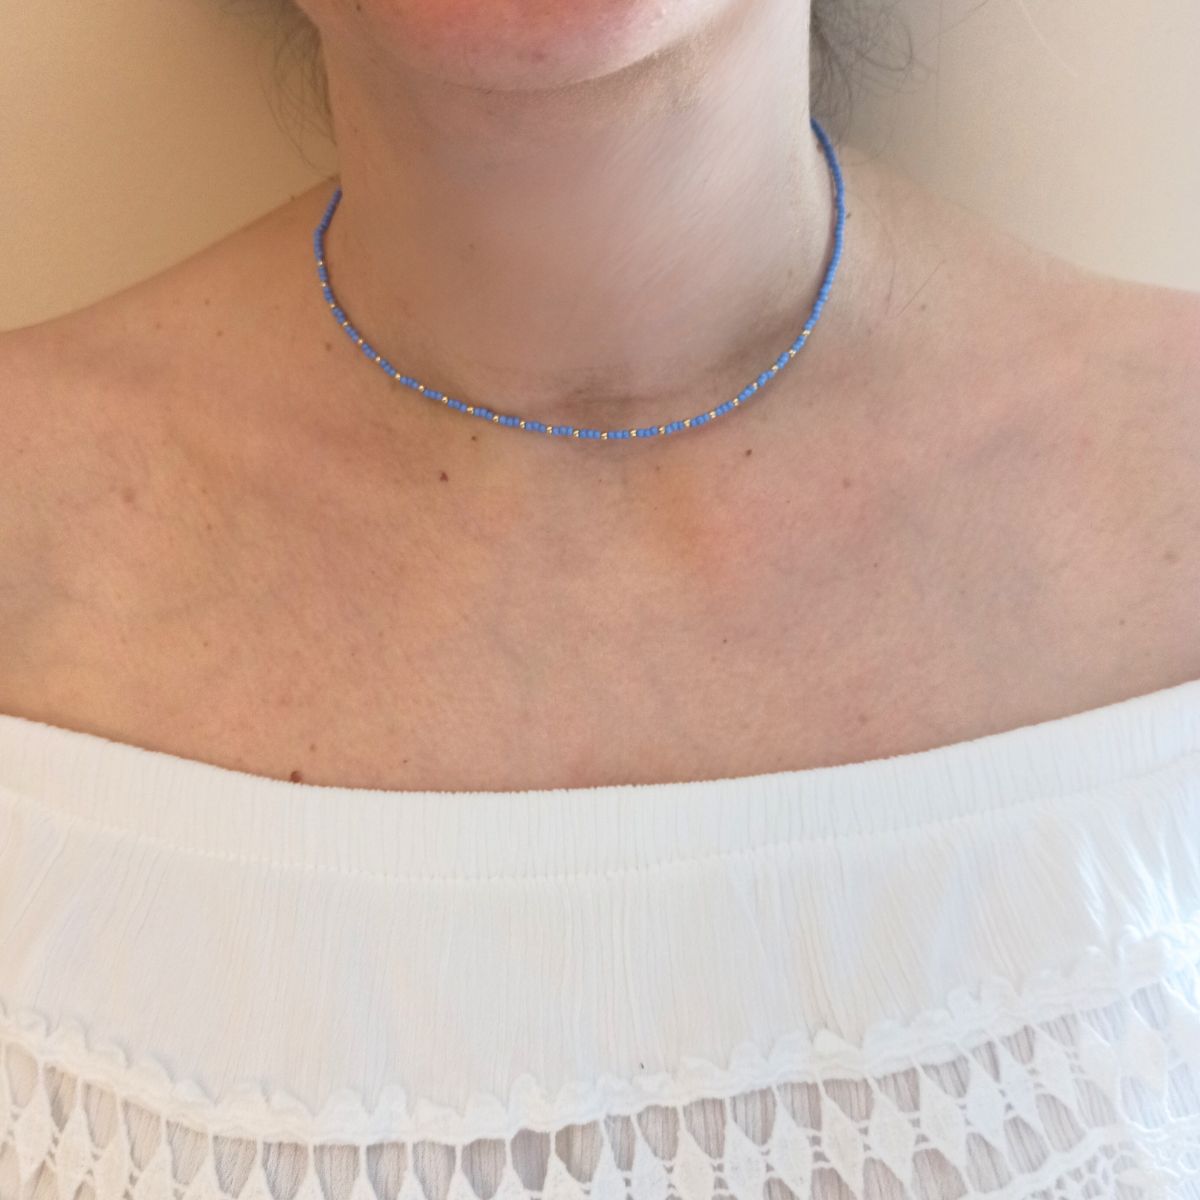 Καλοκαιρινό κολιέ με γυάλινες και μεταλλικές χάντρες (N1175) - necklace - charmy.gr